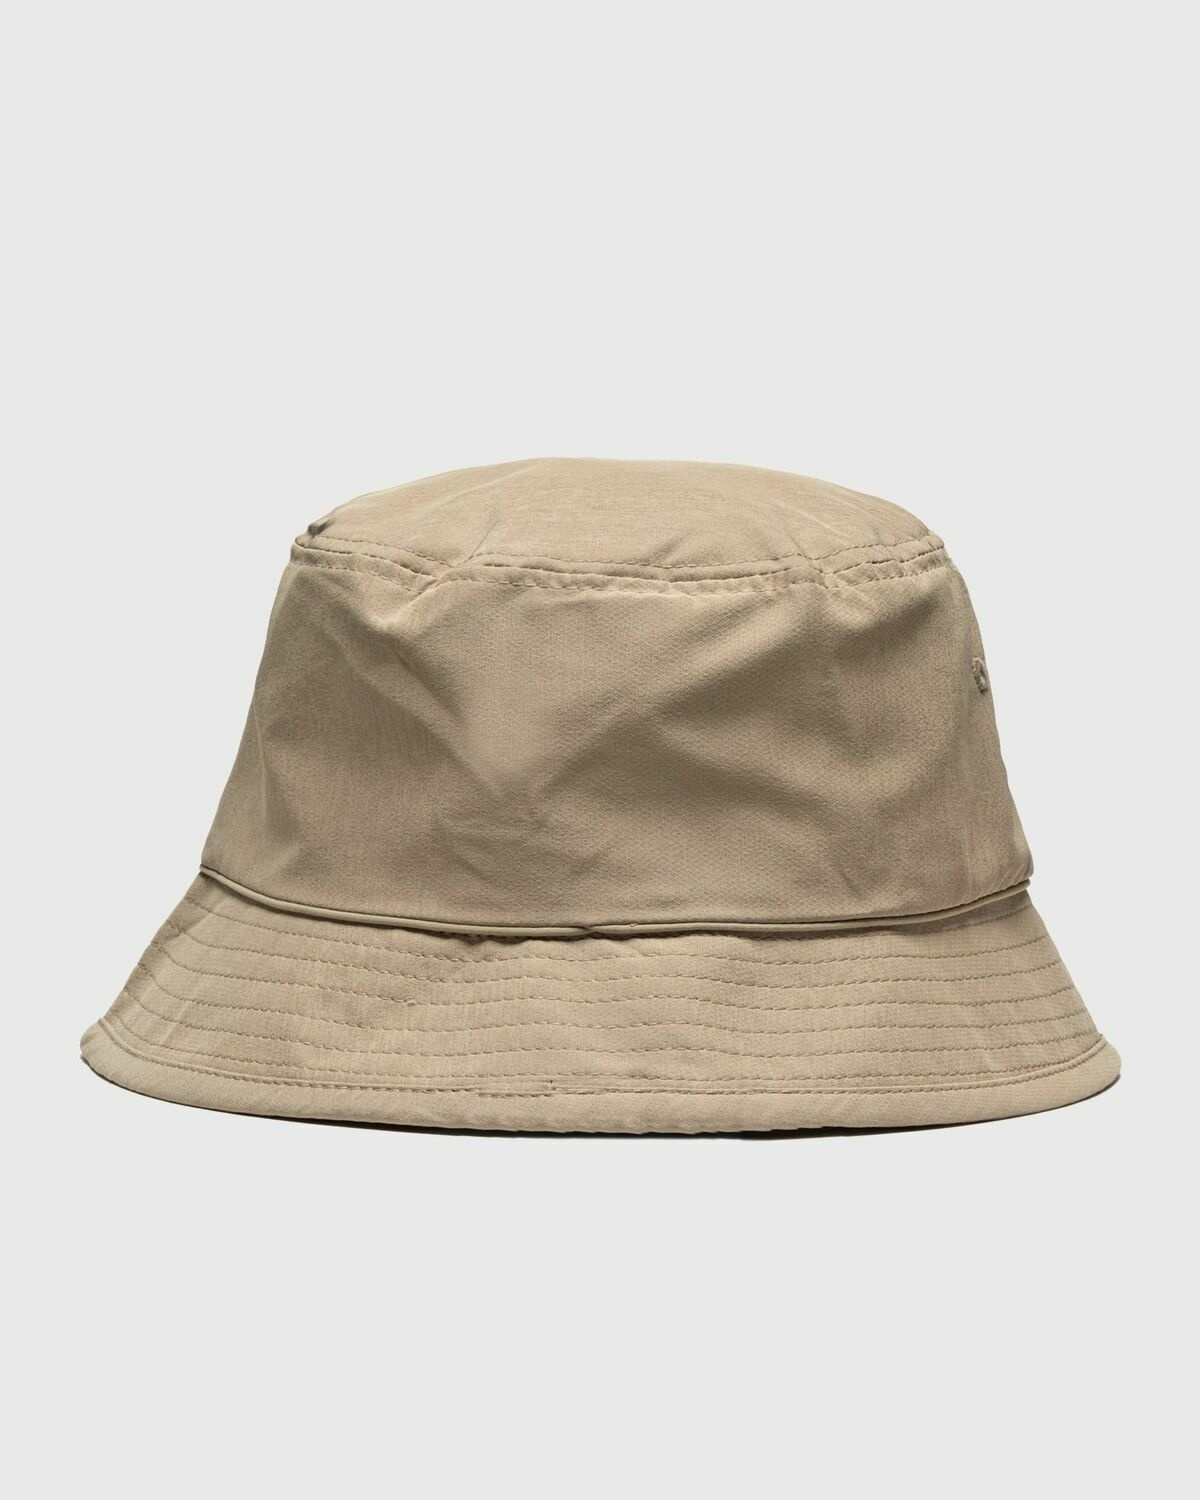 Columbia Pine Mountain Bucket Hat Beige - Mens - Hats Columbia